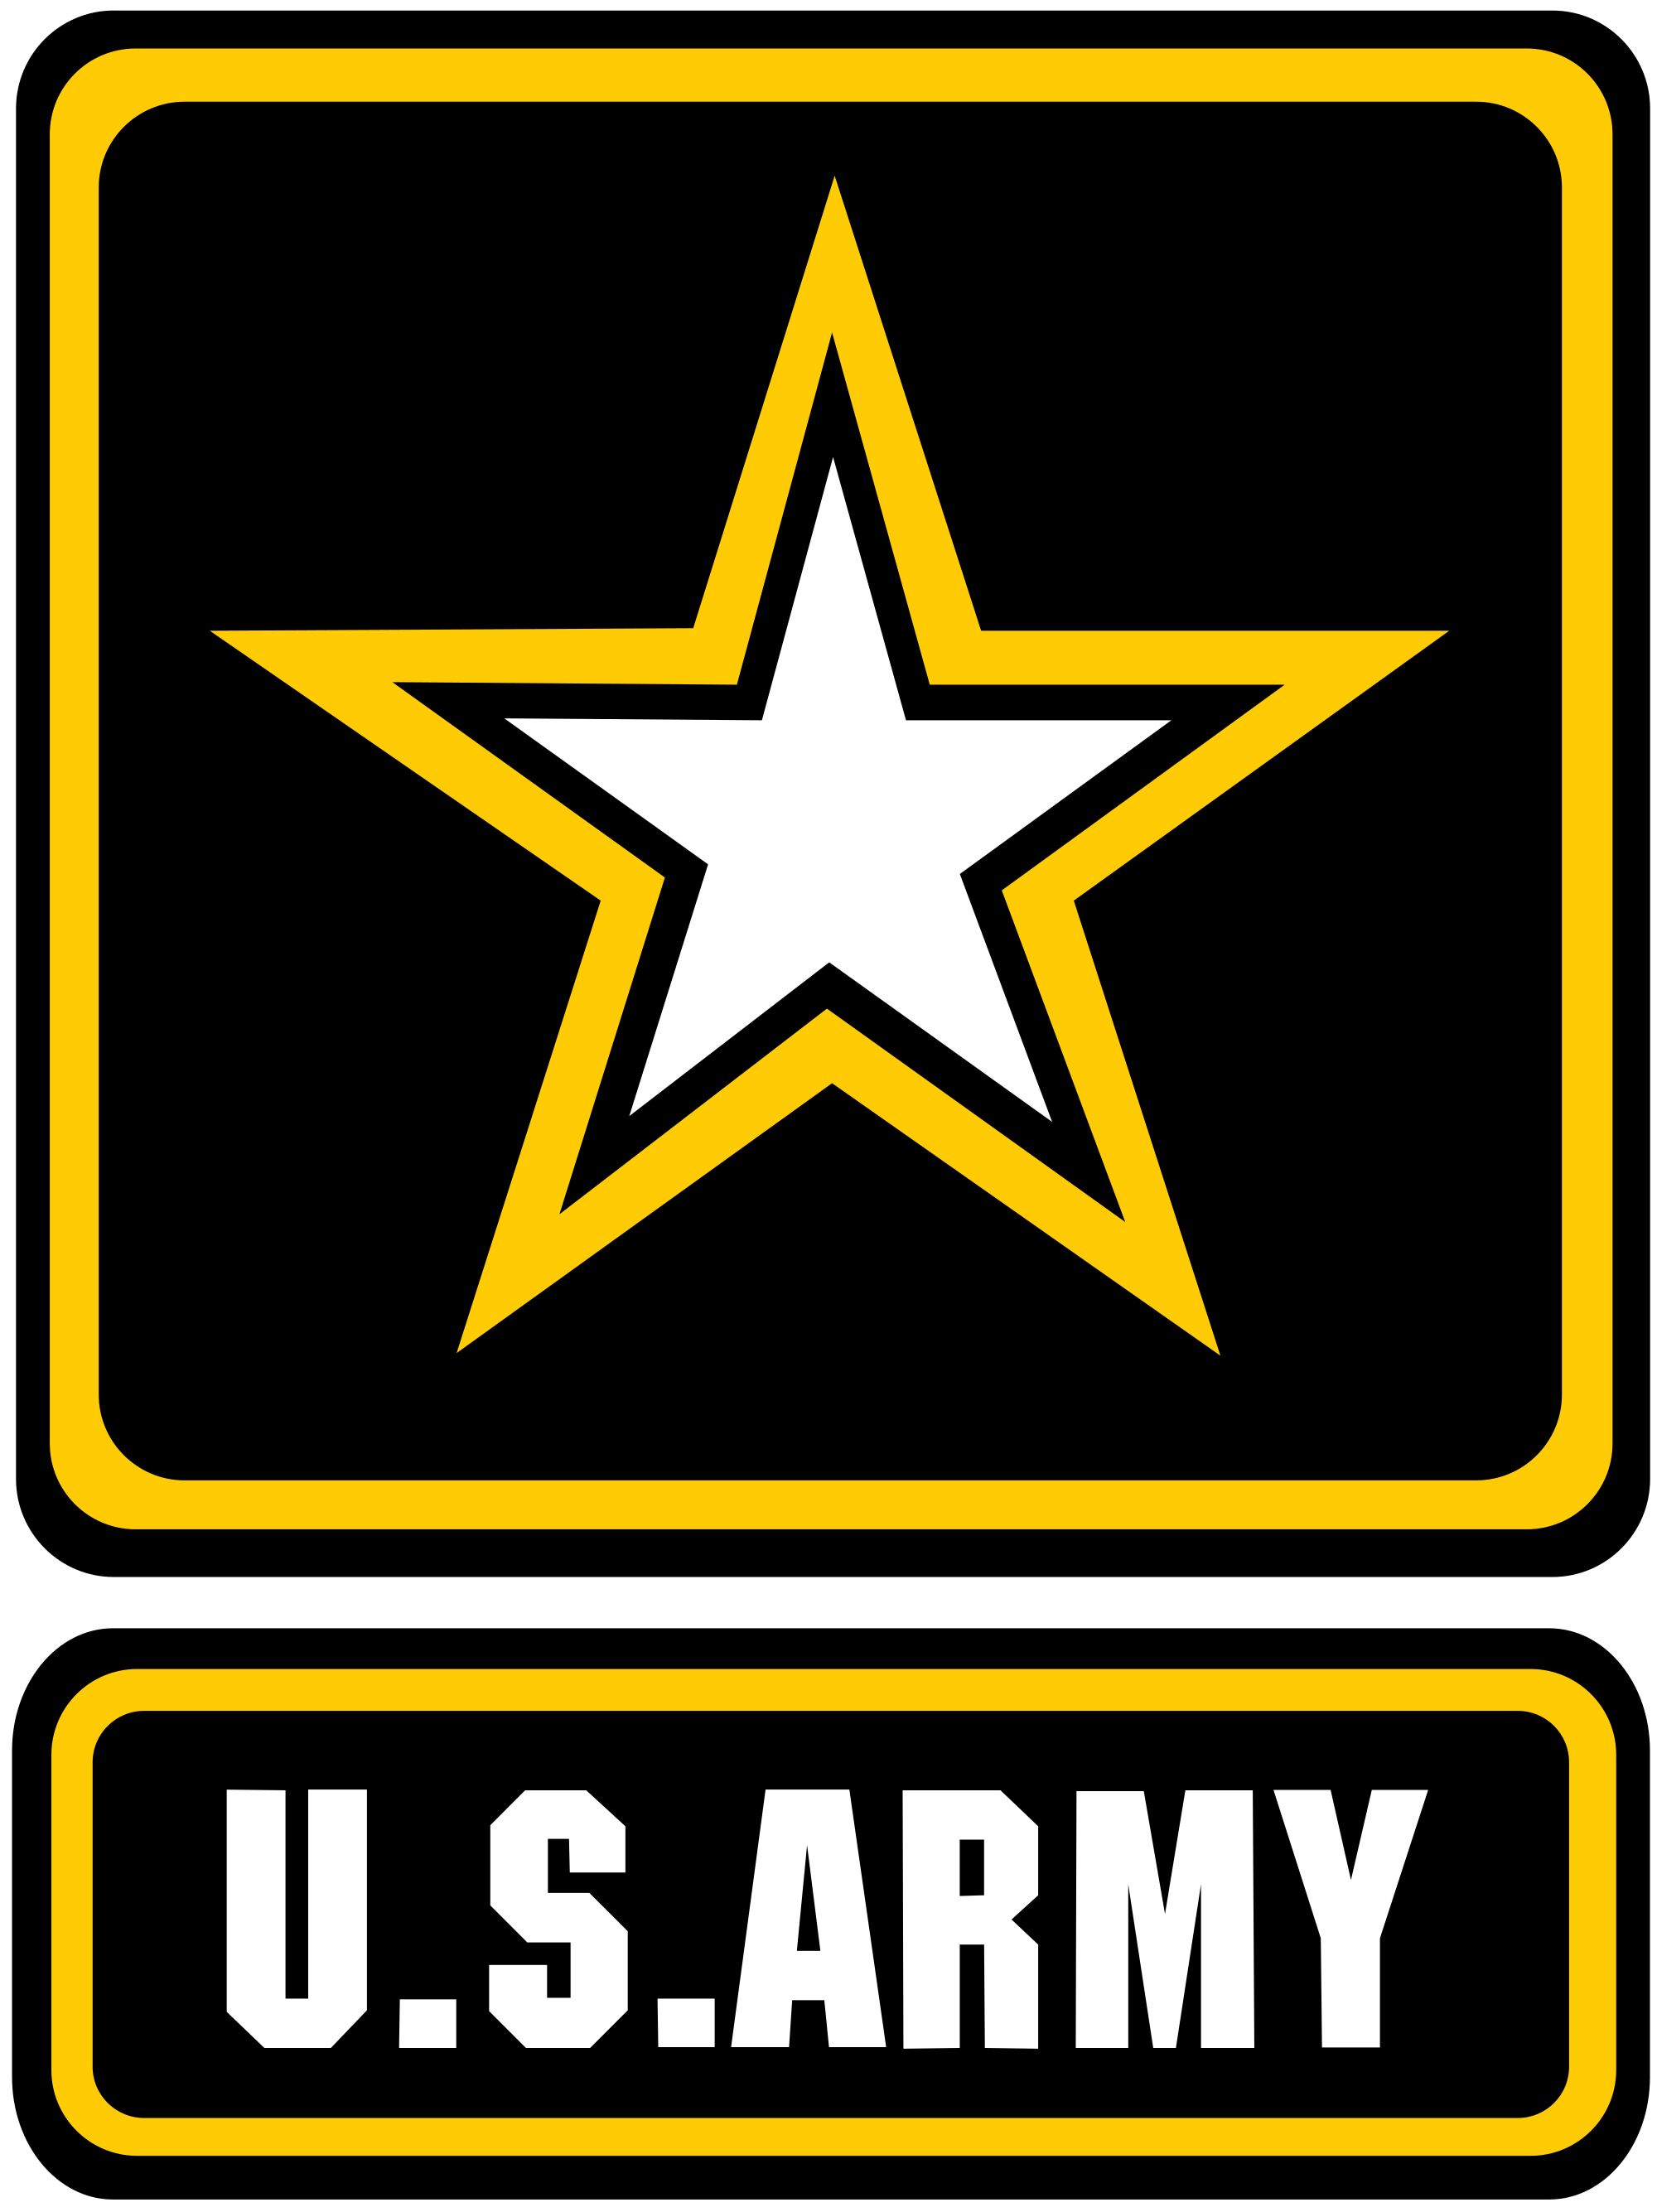 U.S. Army Logo - File:US Army logo.svg - Wikimedia Commons